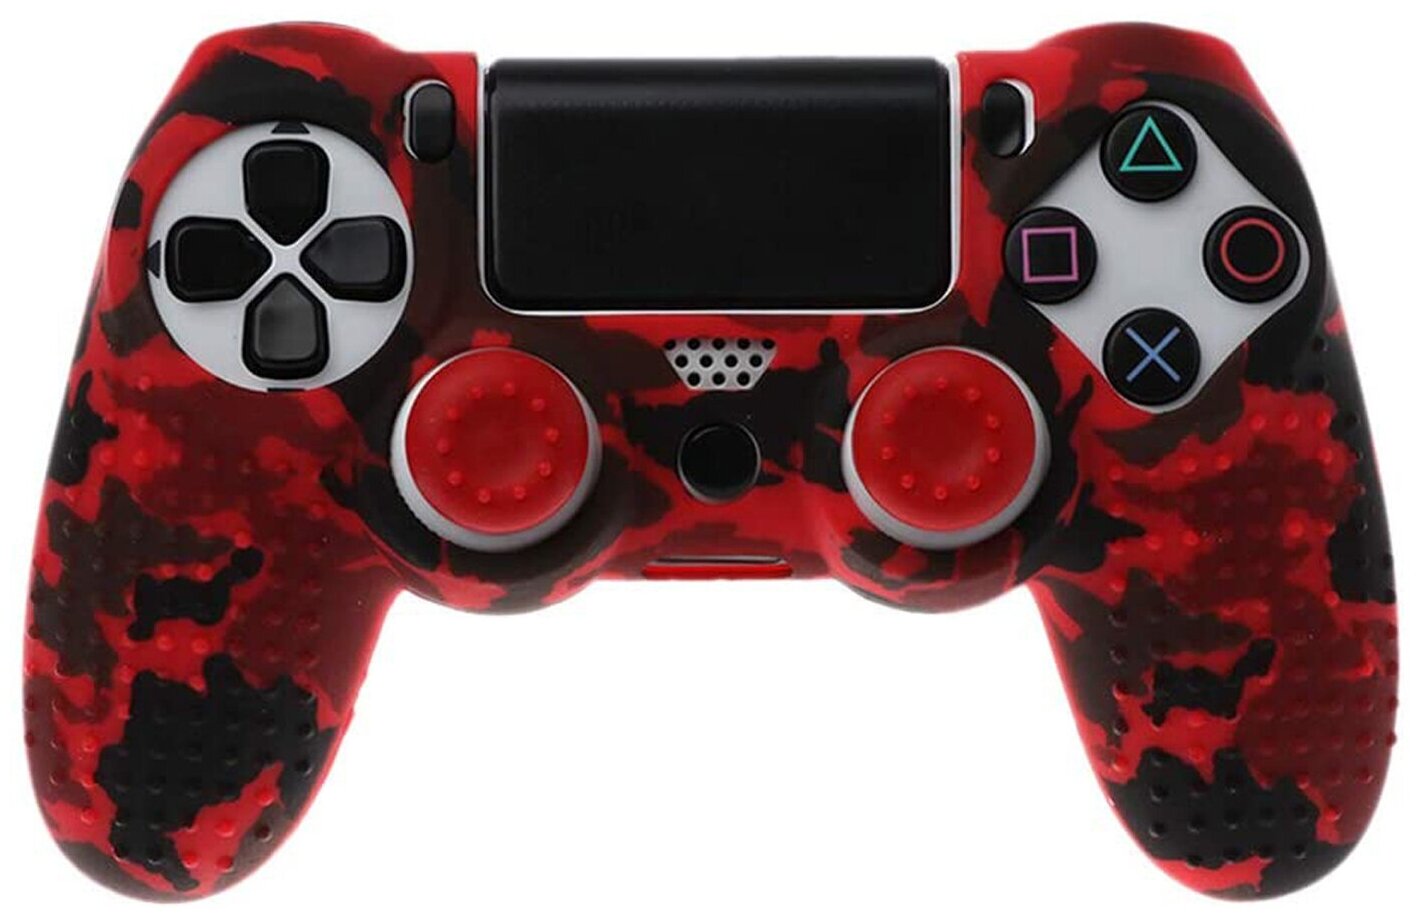 Защитный силиконовый чехол для геймпада PS4 (матовая накладка для контроллера ПС4) с рисунком и массажными пупырками красно-черный